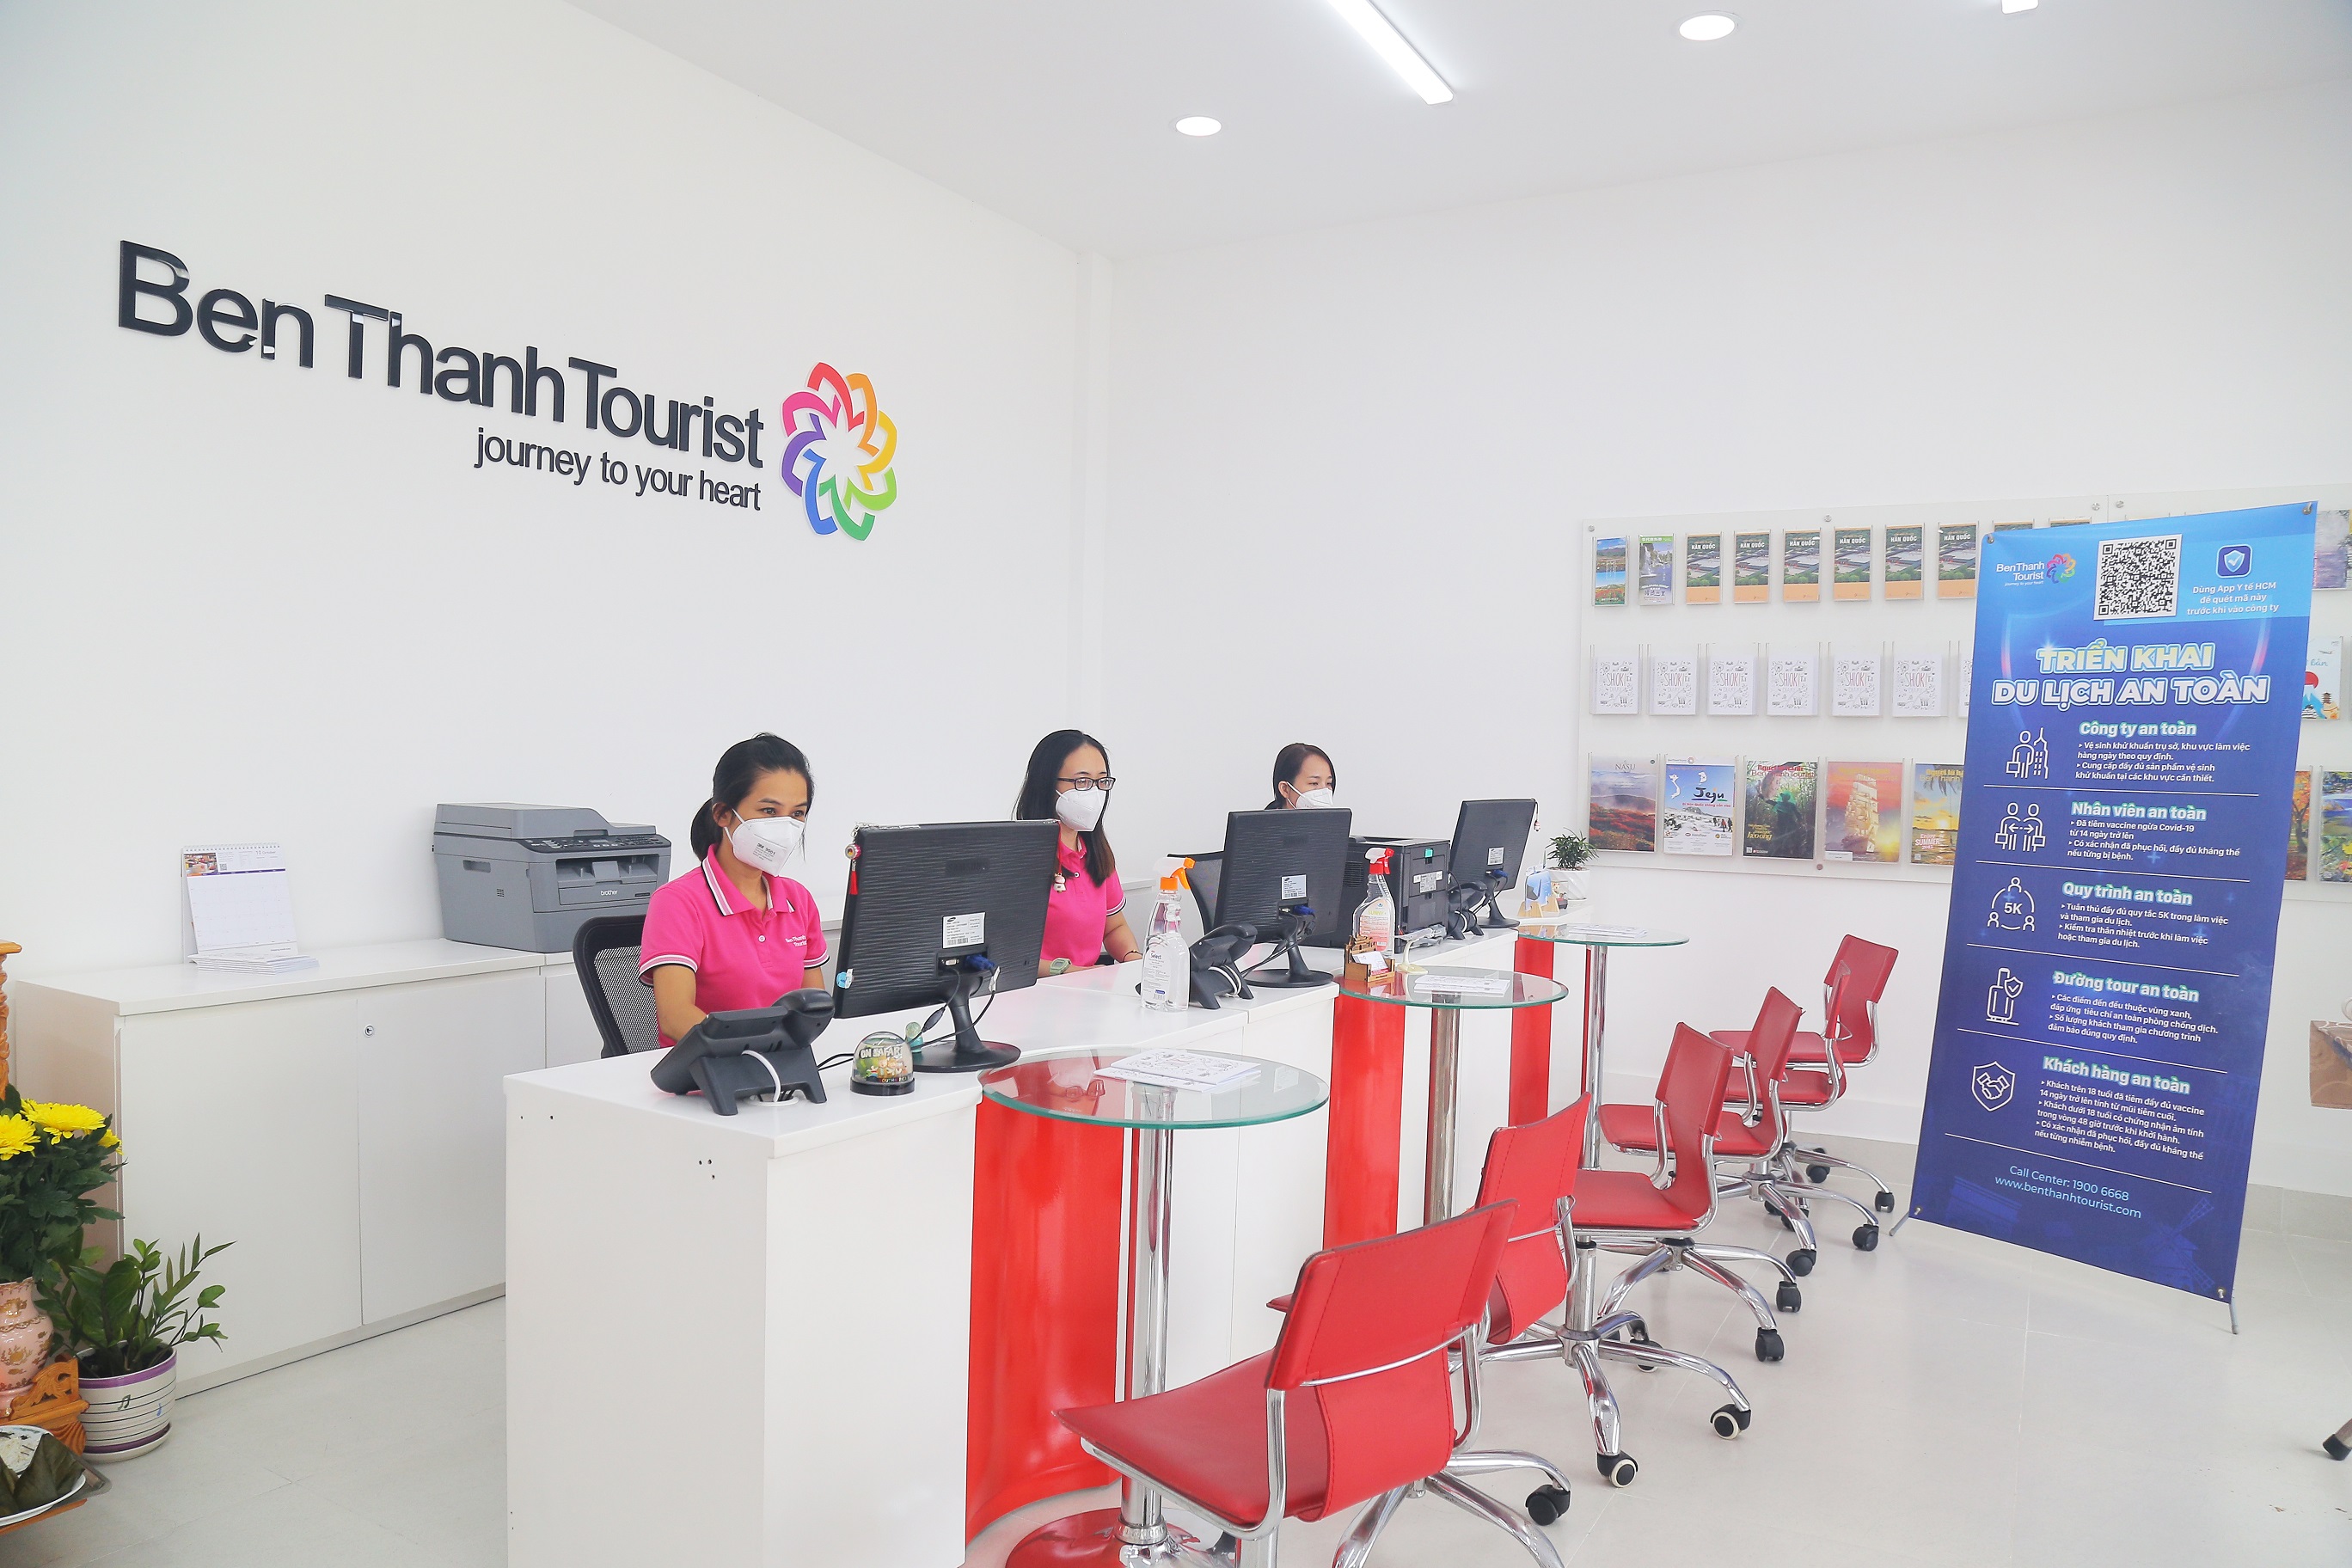 Khai trương trung tâm du lịch khách lẻ BenThanh Tourist
                 – Vietnam Report